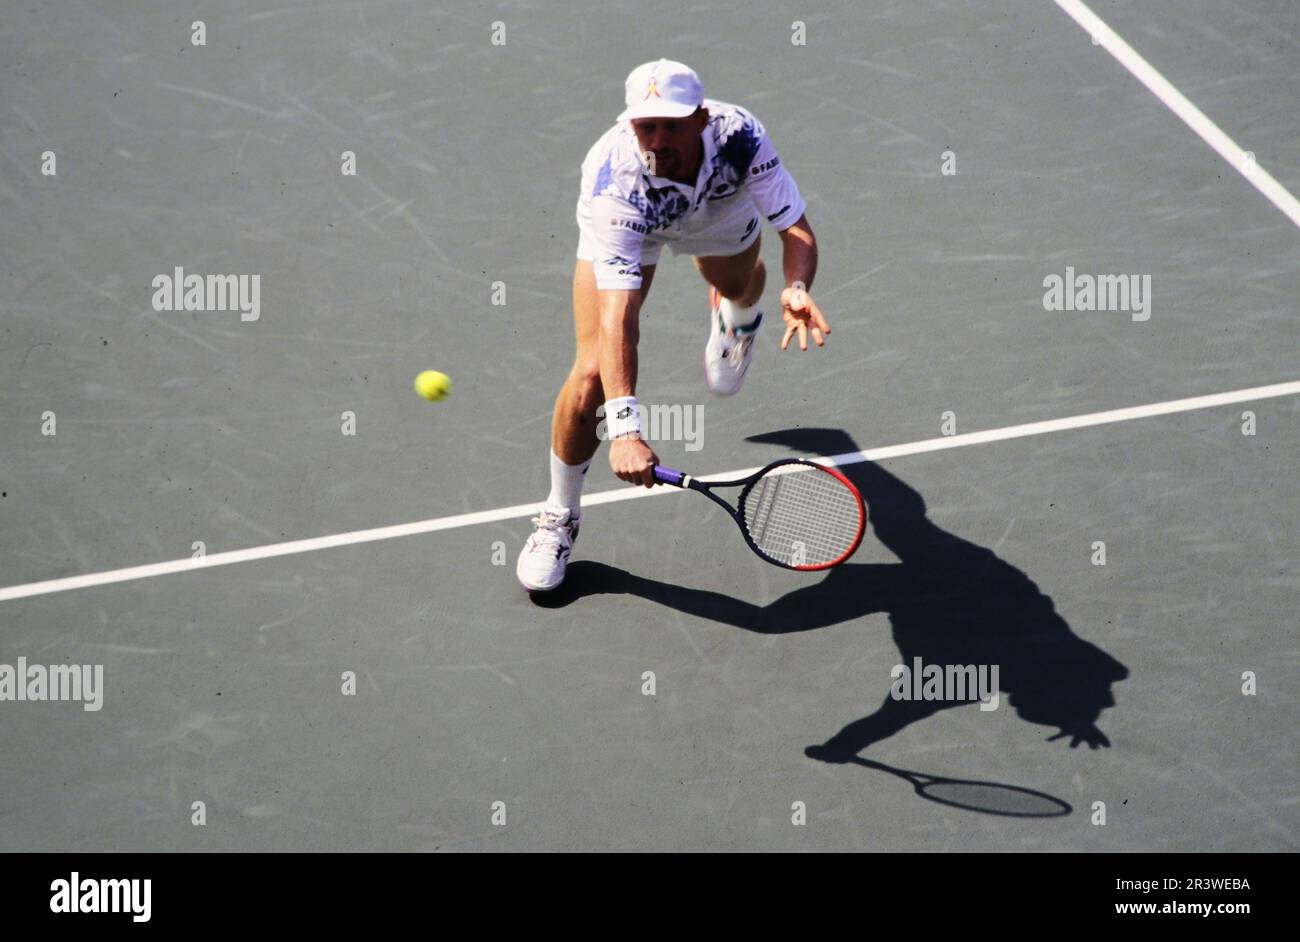 Boris Becker, deutscher Tennisspieler, auf dem Tennisplatz in Aktion. Stockfoto